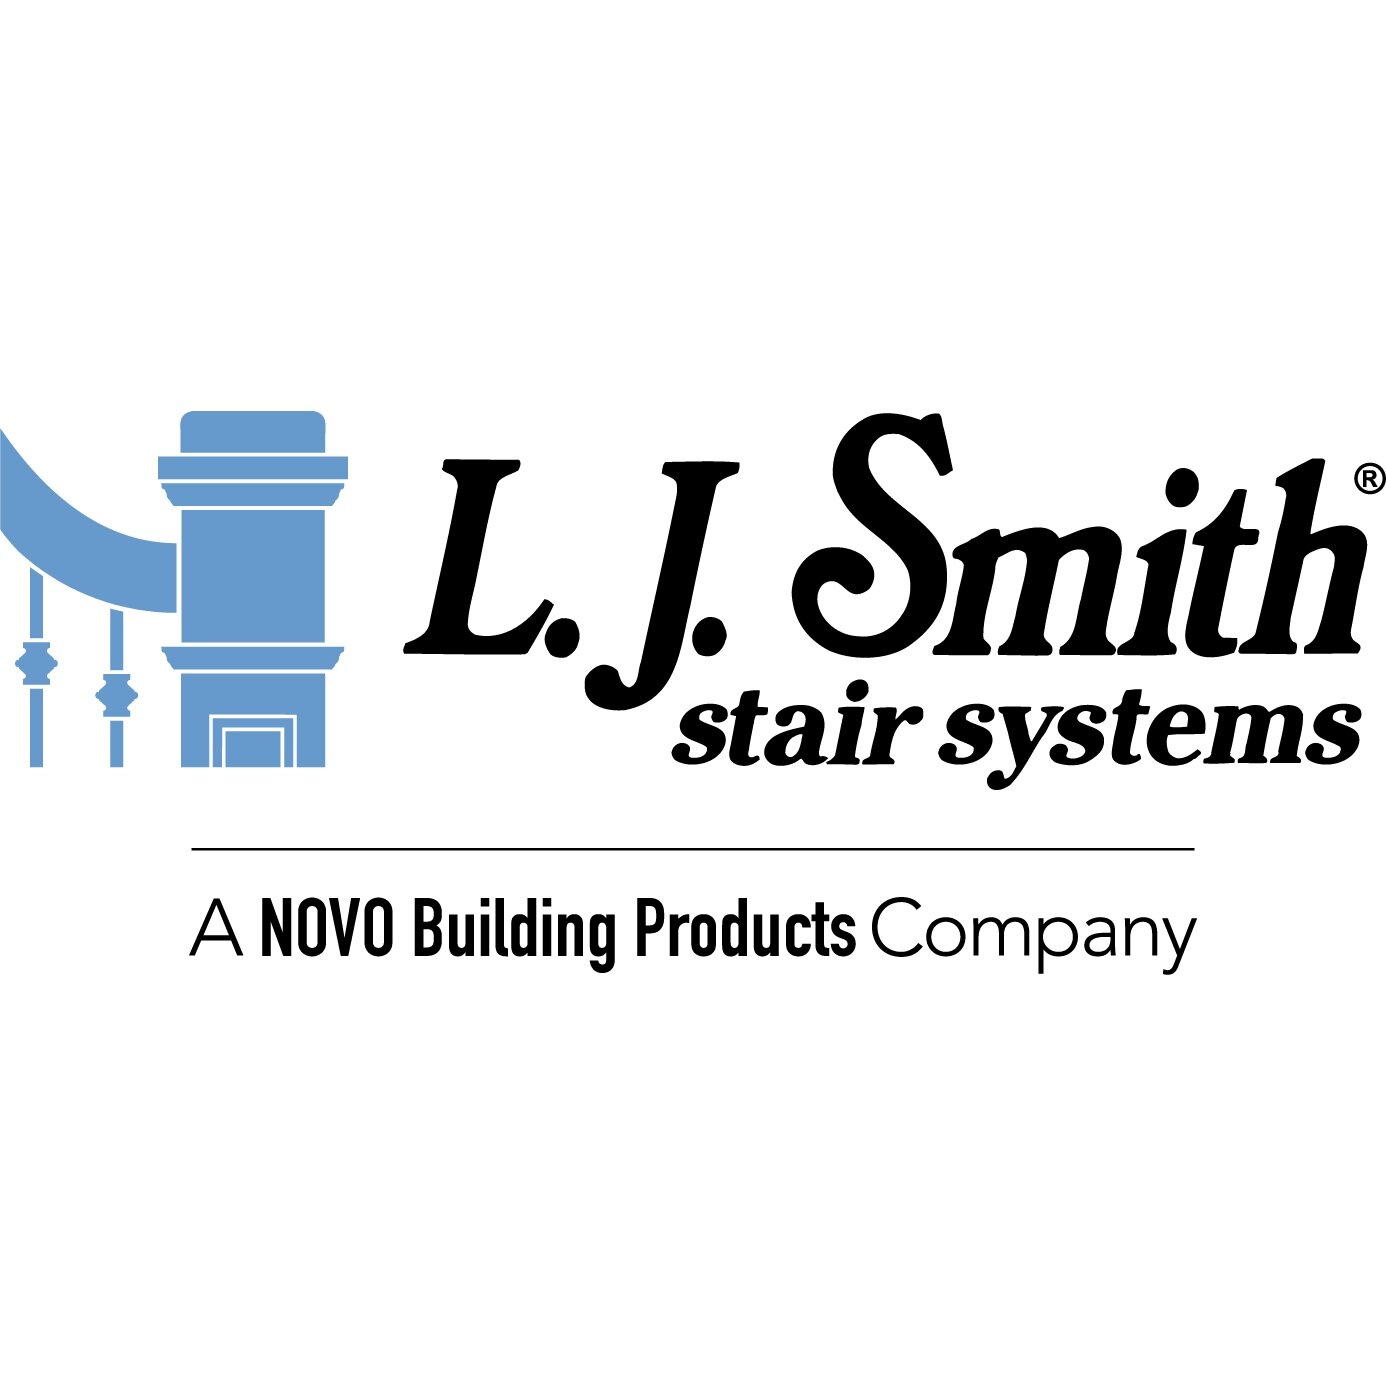 New Logo & Brand Identity for Smithey by Stitch — BP&O